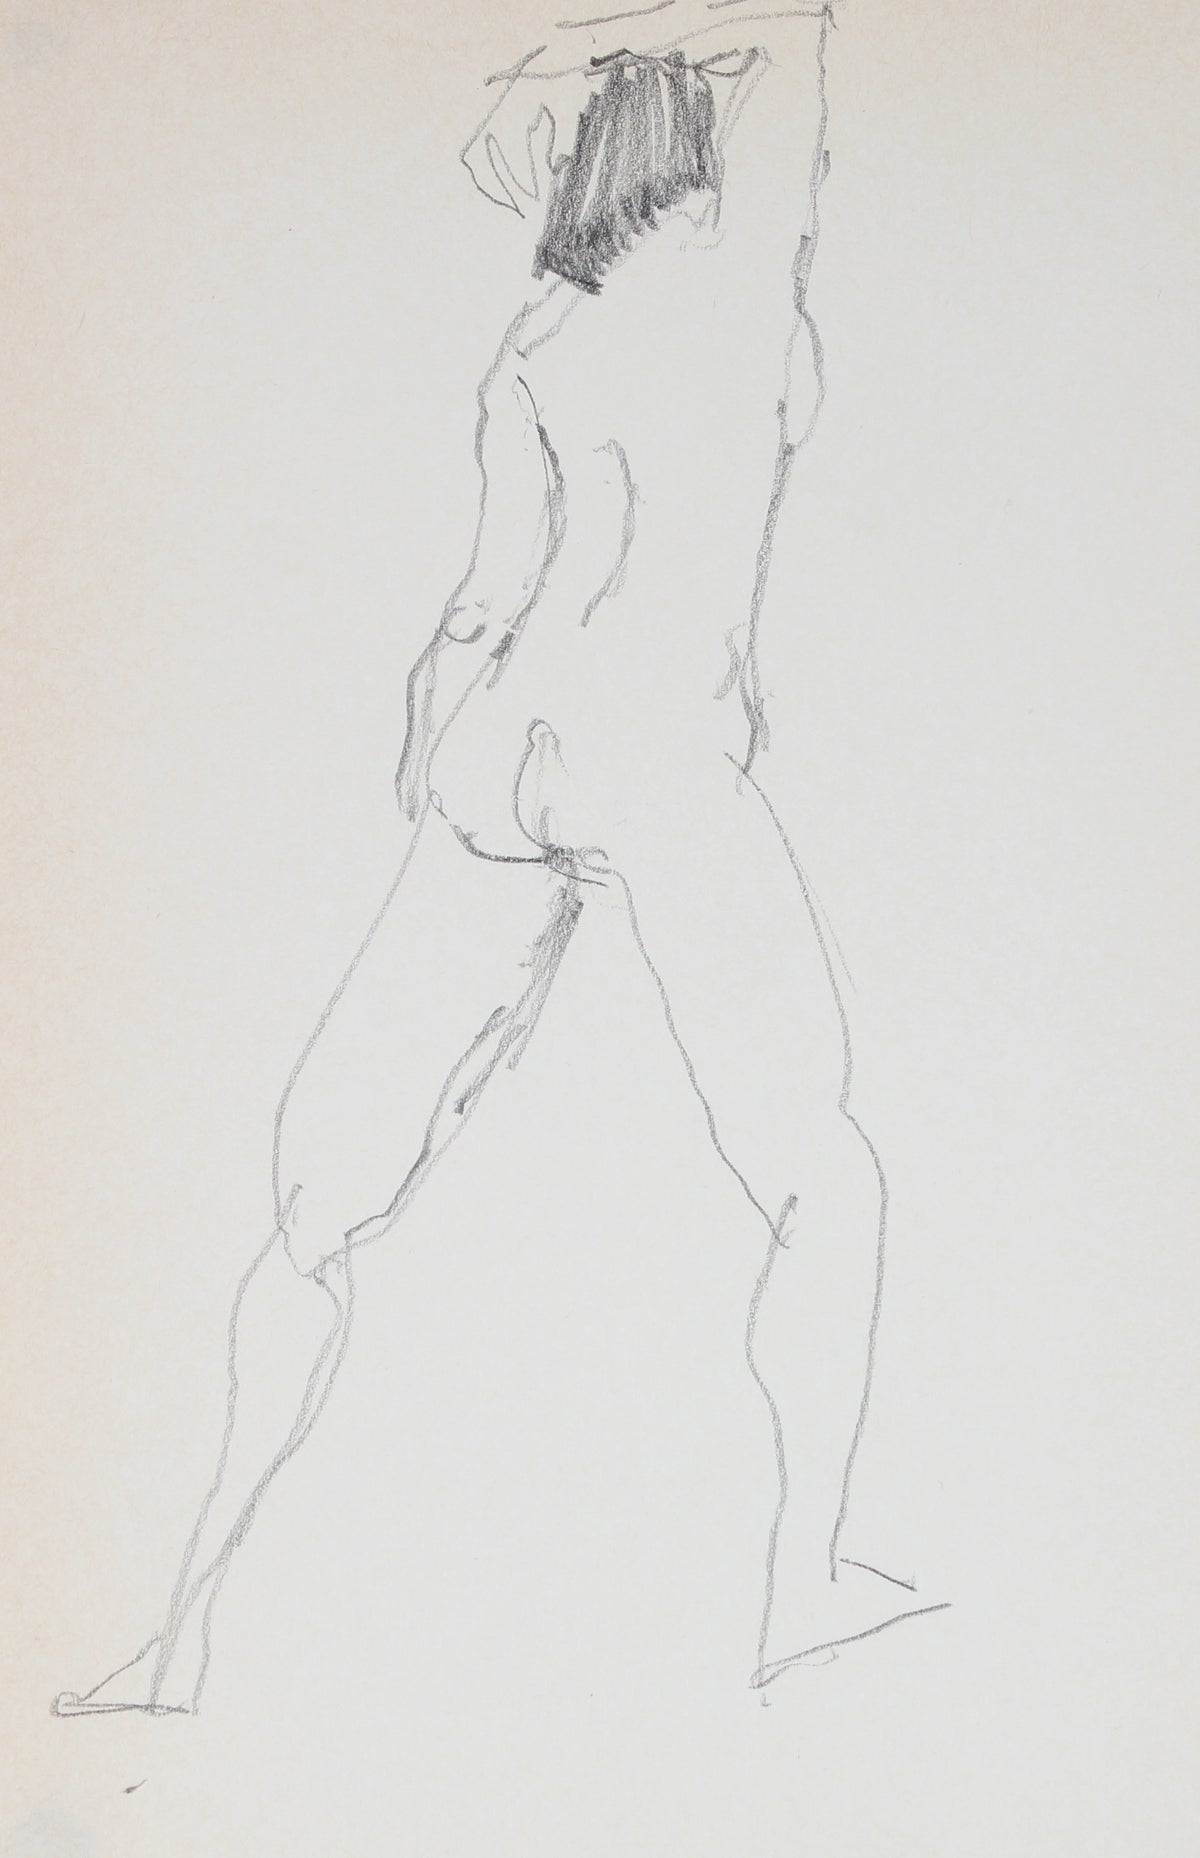 Standing Nude Drawing &lt;br&gt;1989 Graphite &lt;br&gt;&lt;br&gt;#30026